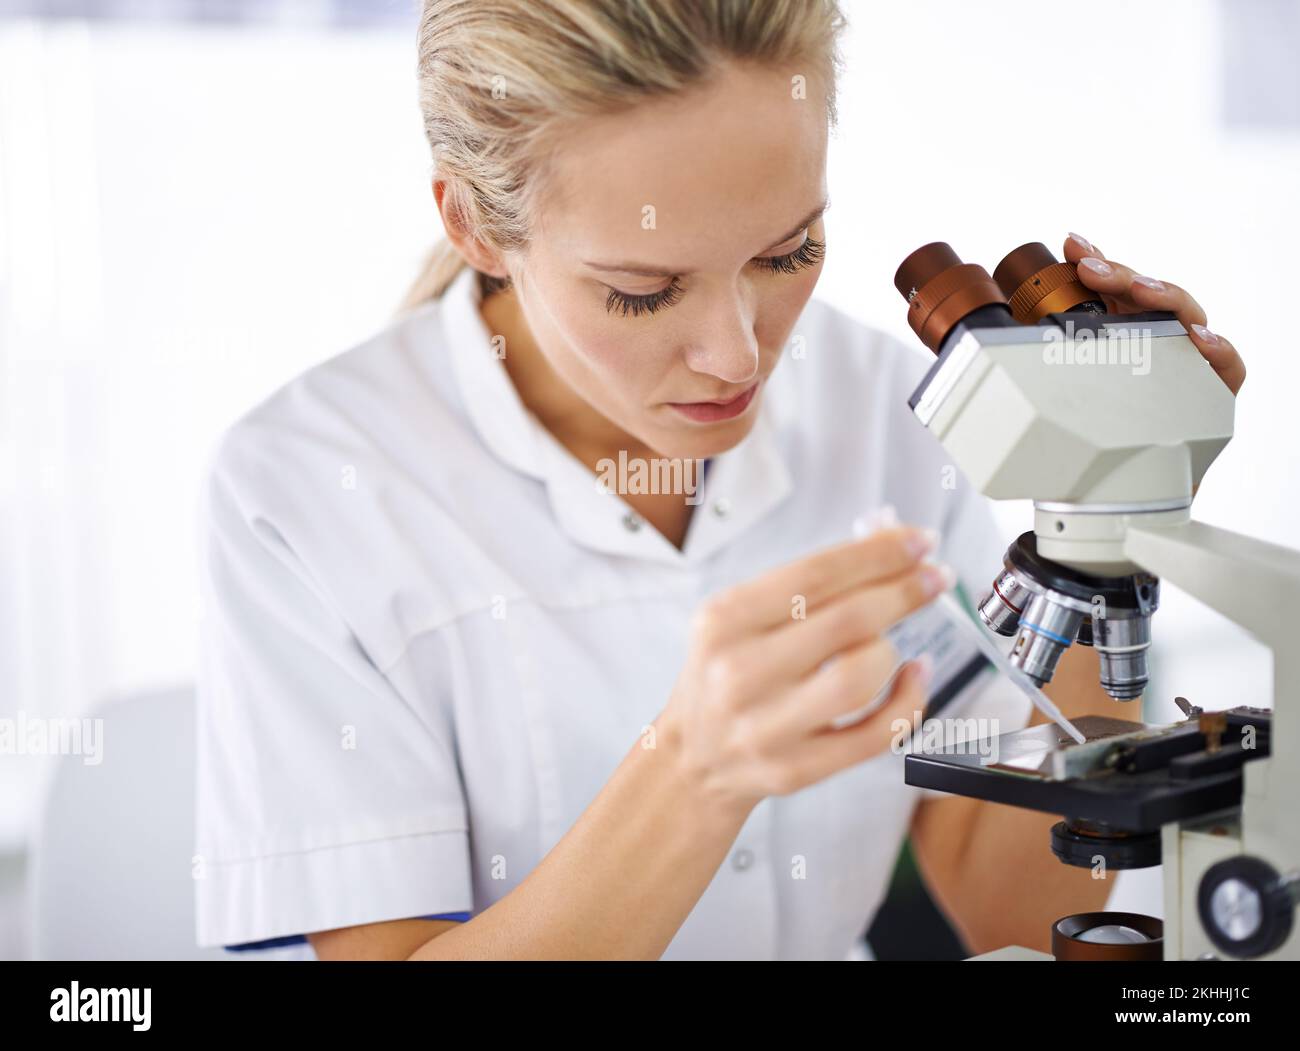 Es ist ernst damit, ein Heilmittel zu finden. Eine schöne Frau in einem Labor, die mit einem Mikroskop arbeitet. Stockfoto